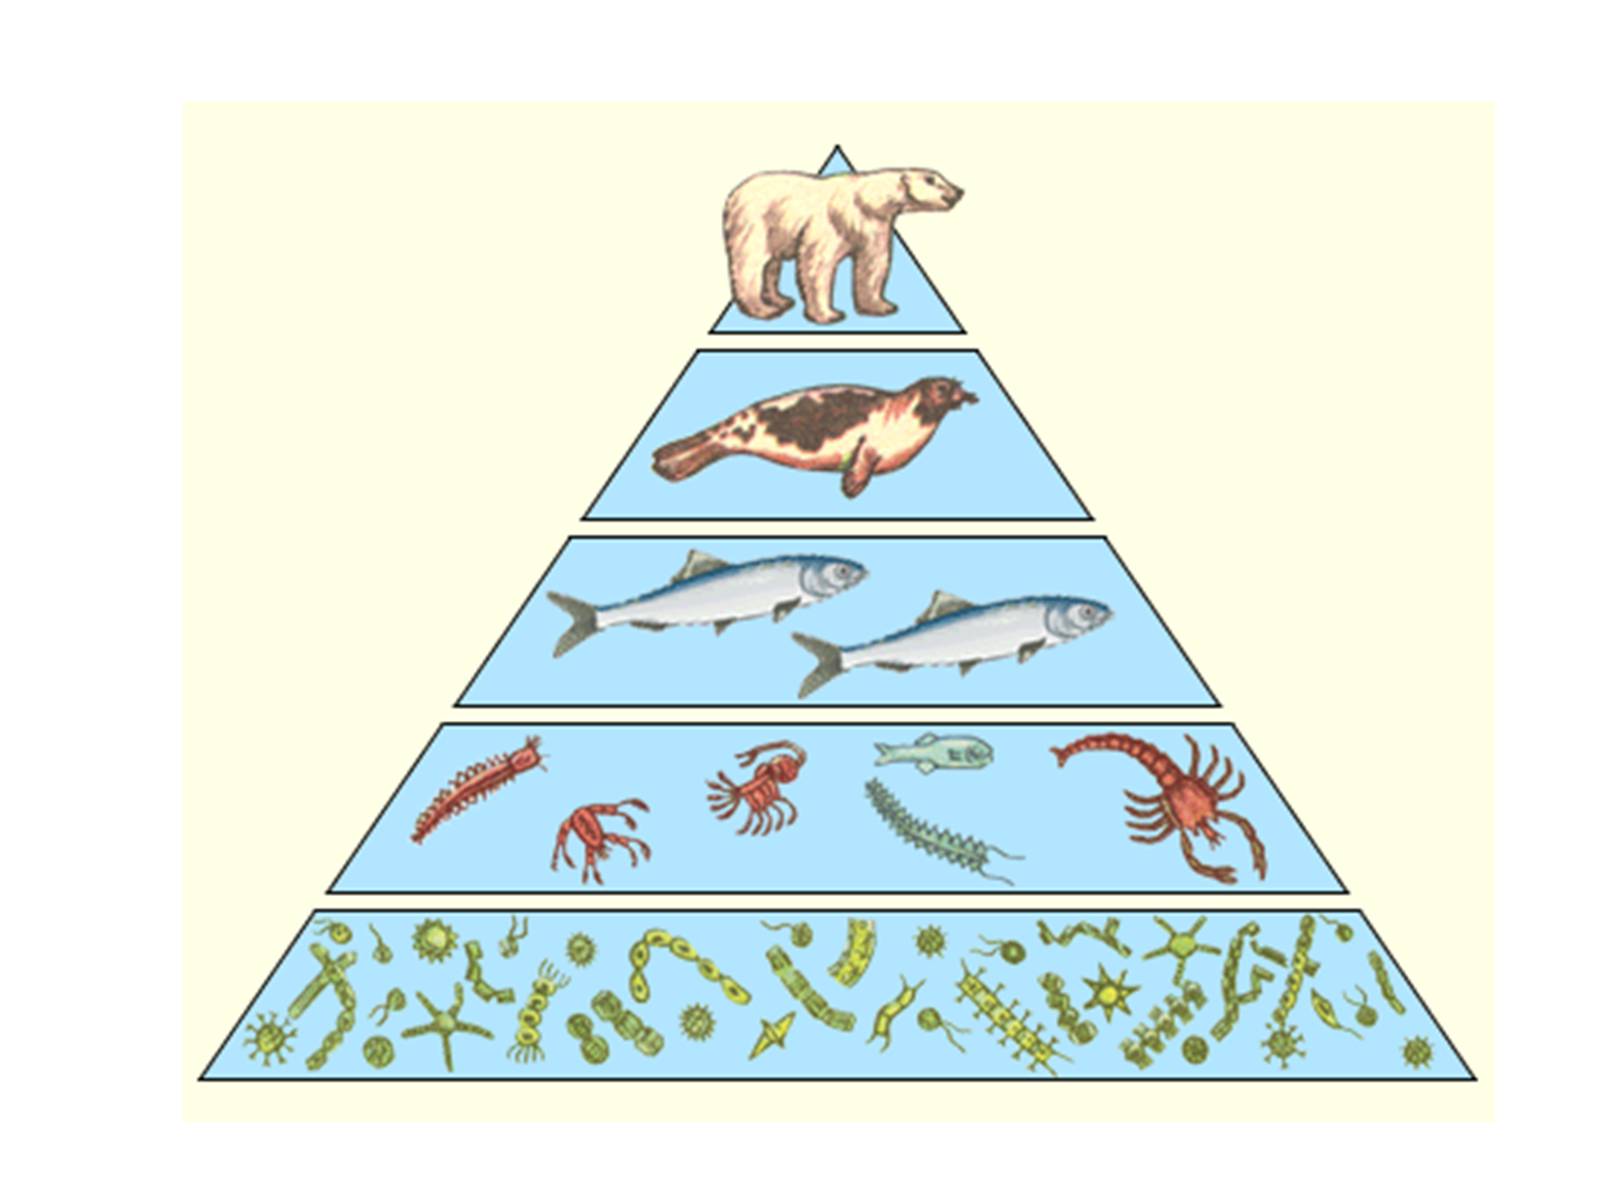 Экологические пирамиды биомасс энергии. Экологические пирамиды пирамида биомасс. Пирамида биомассы пищевой цепи. Экологическая пирамида биогеоценоза. Пирамида биомасс пирамида чисел пирамида энергии.